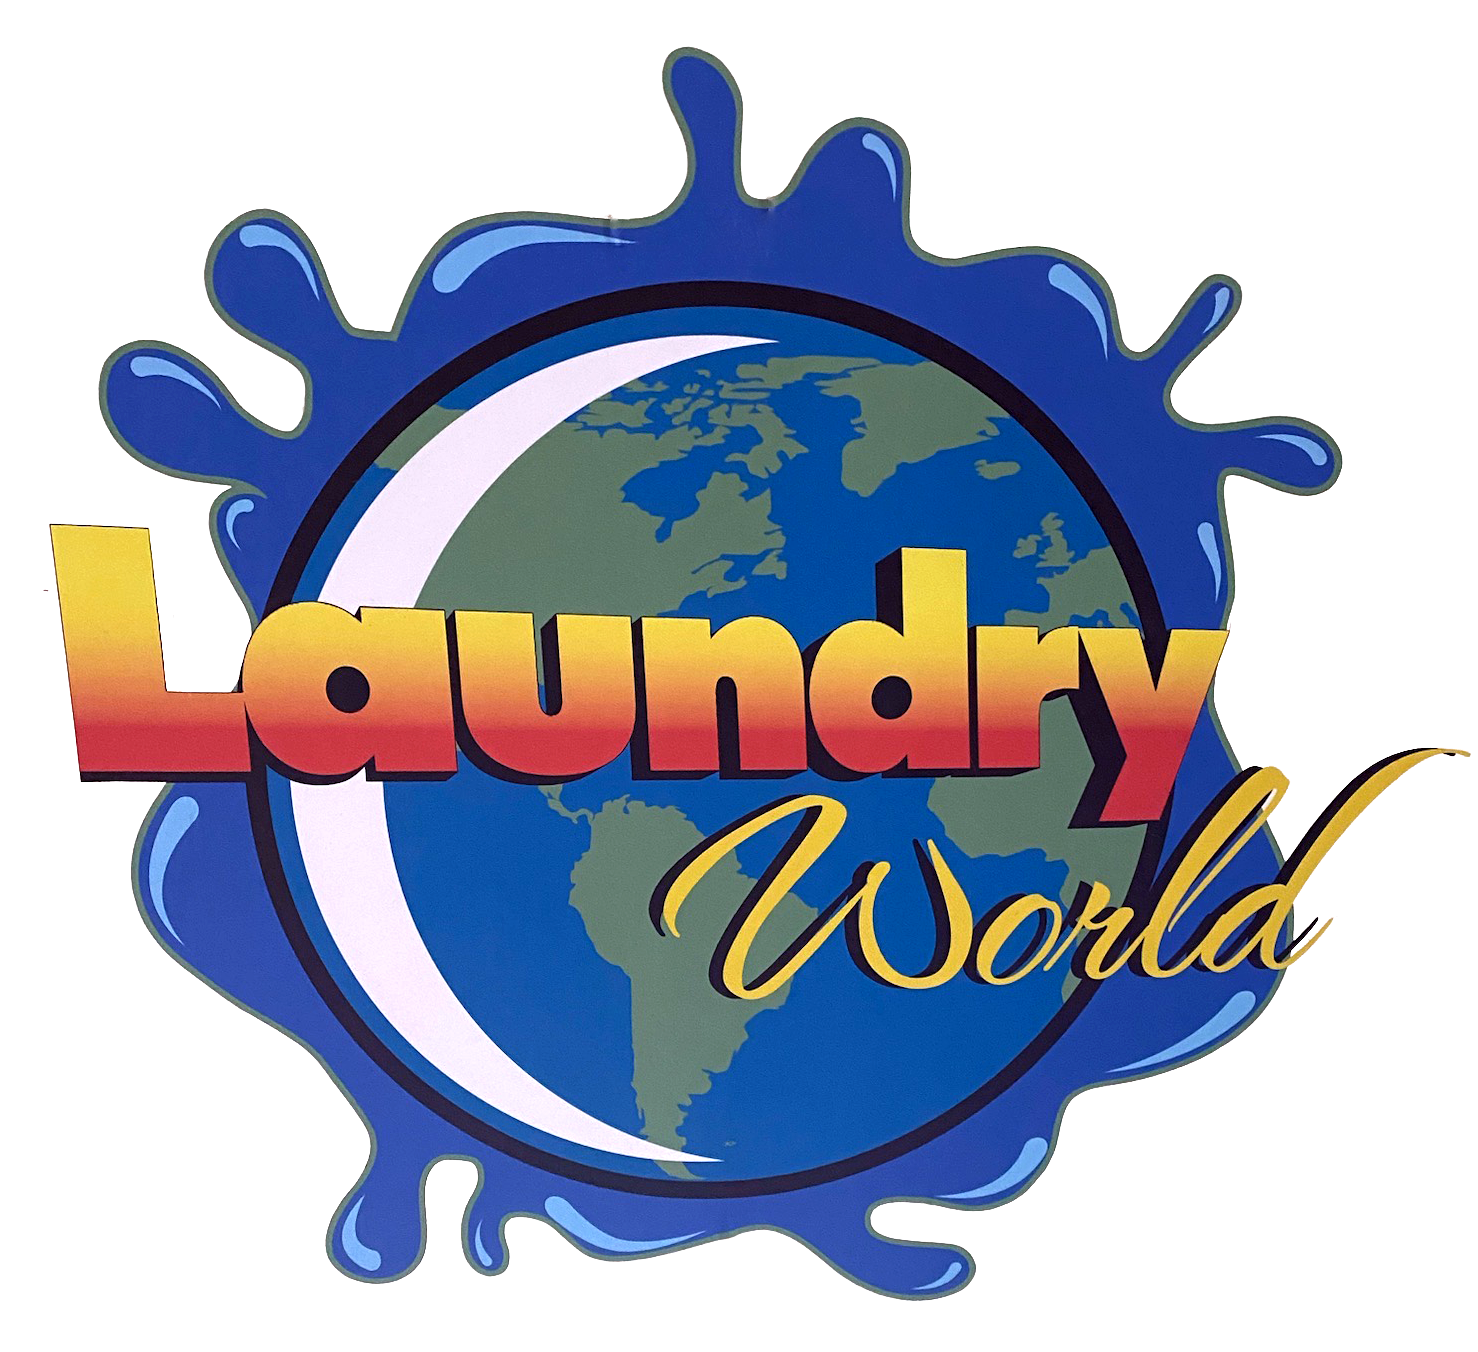 Laundry World